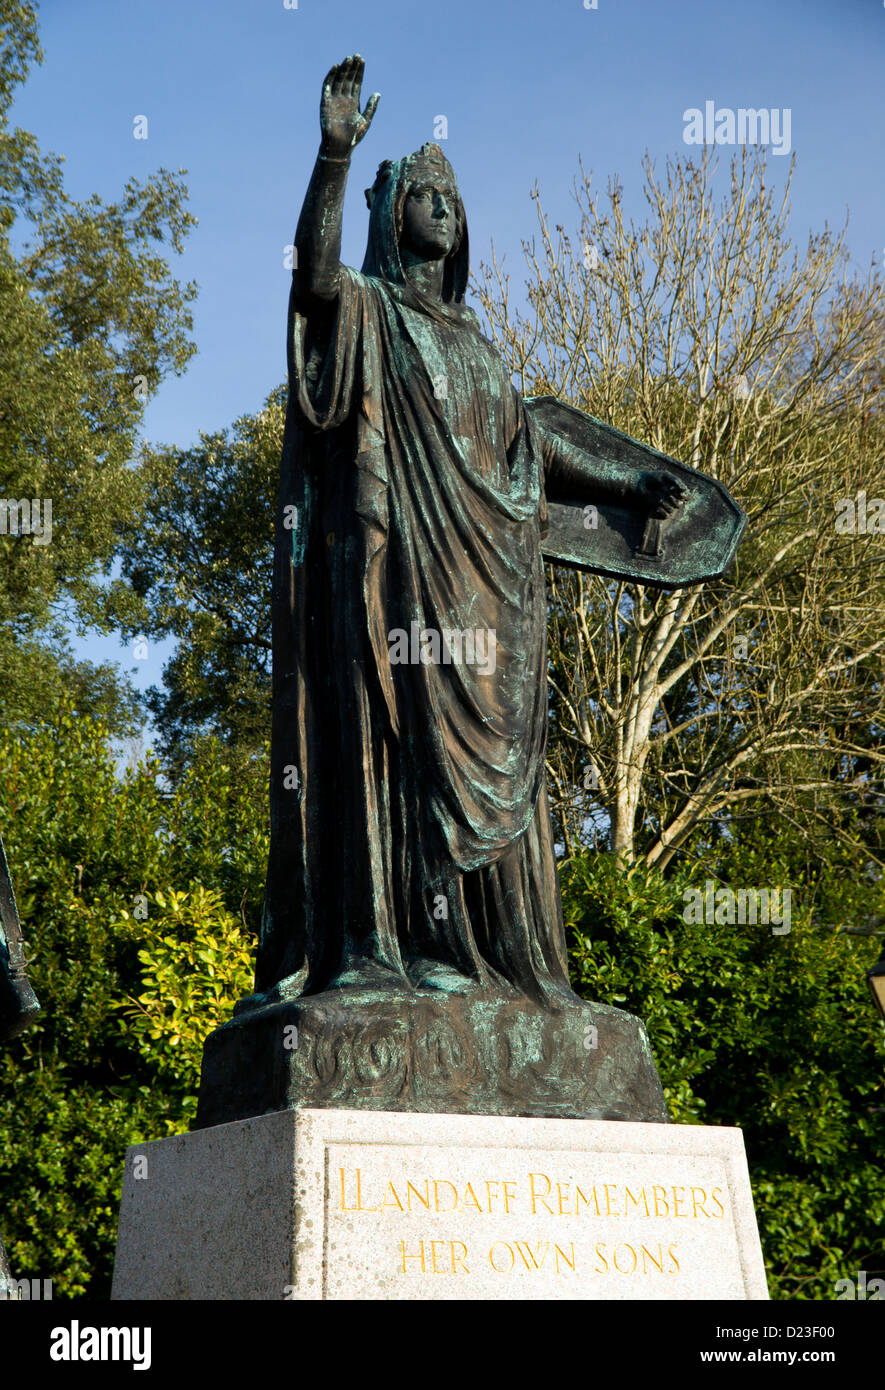 Monument commémoratif de guerre, par William Goscombe John 1924 Llandaff, Cardiff, Pays de Galles, Royaume-Uni Banque D'Images